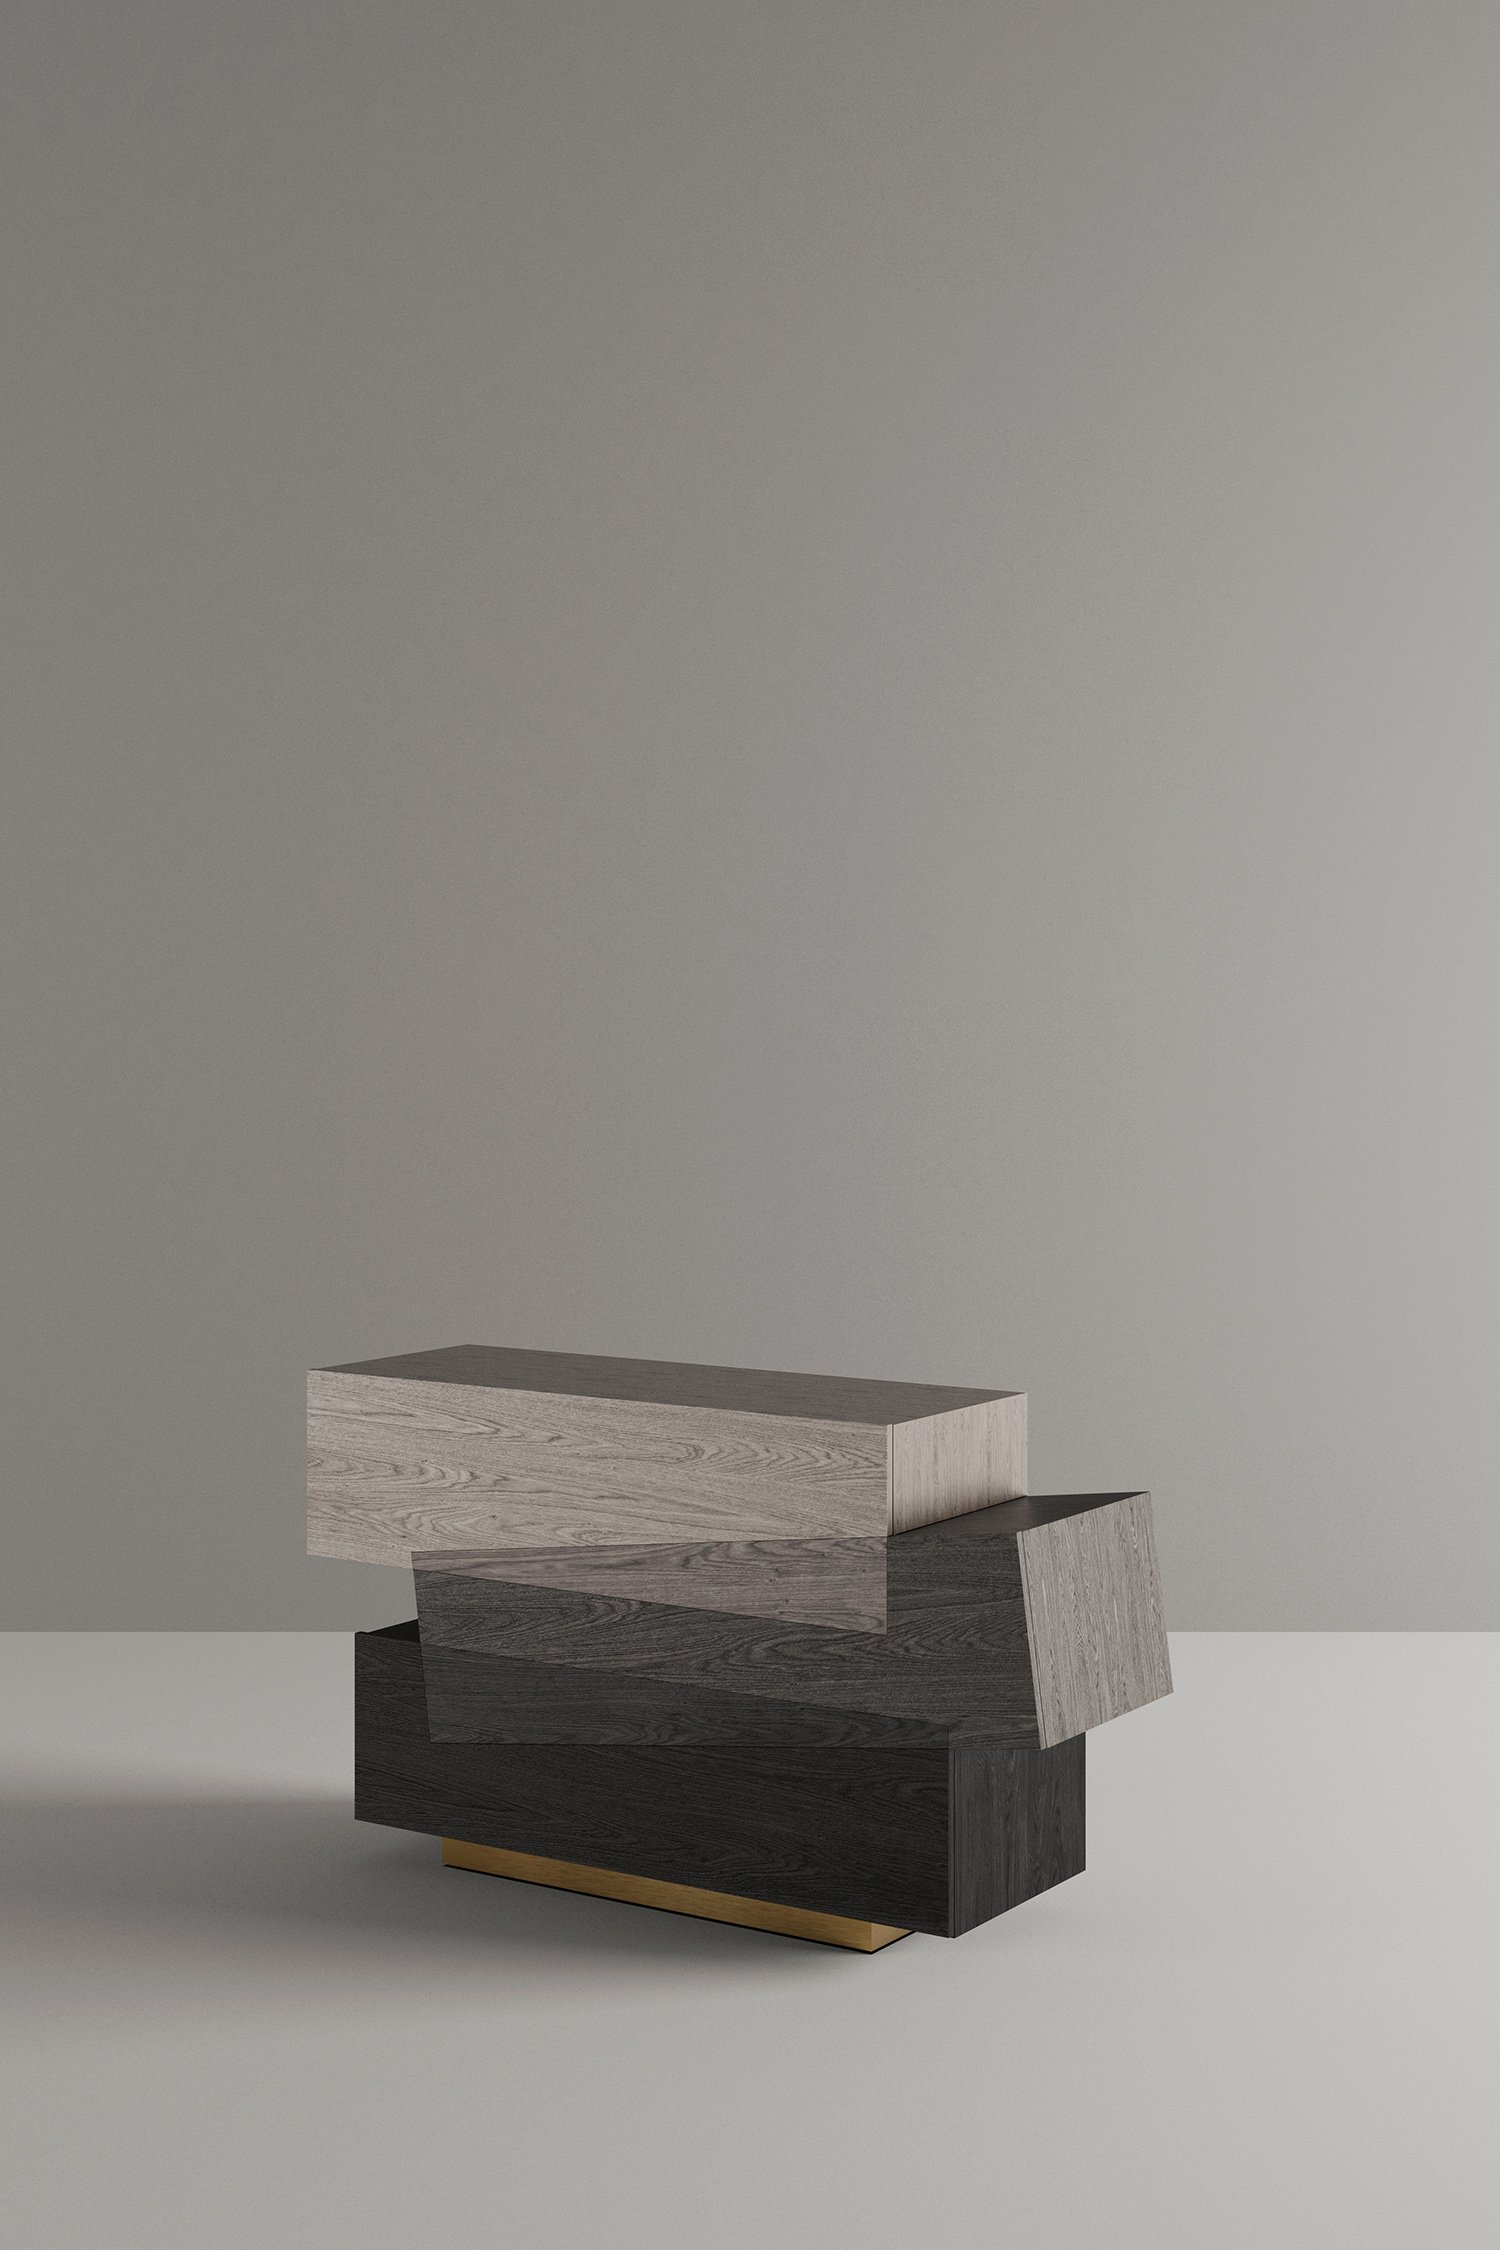 Booleanos Cabinet in gray wood by Joel Escalona.jpg